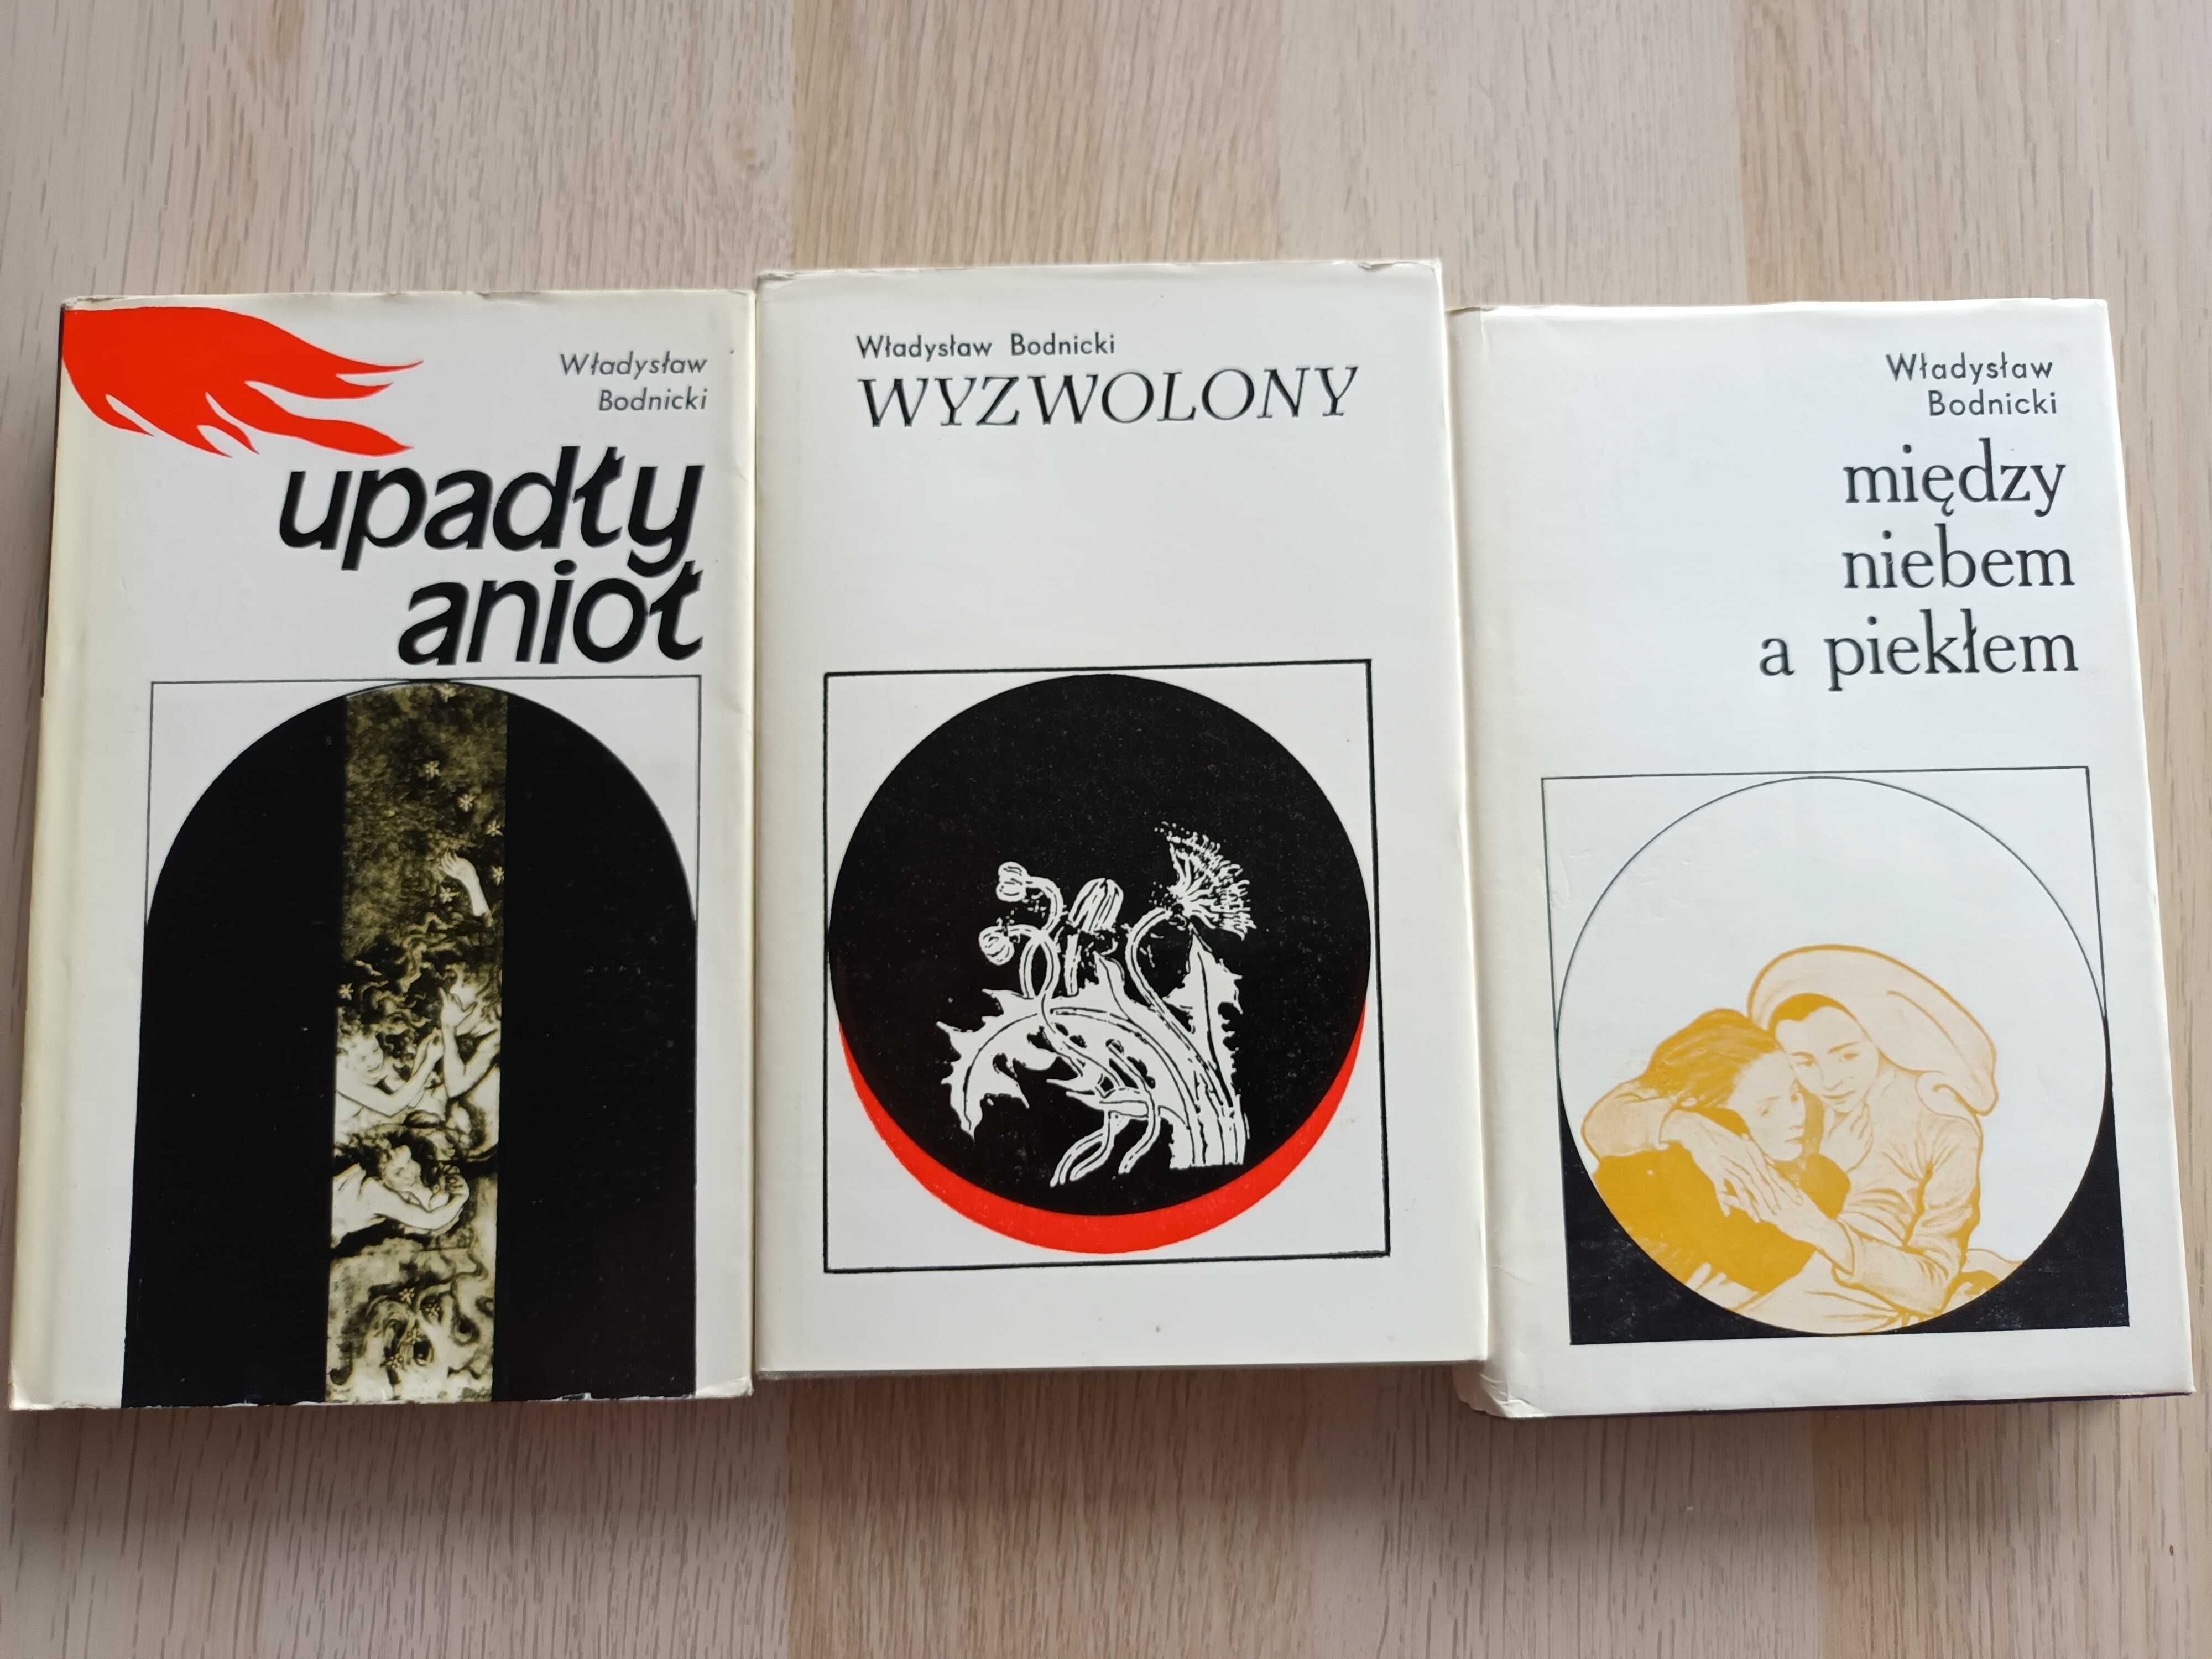 Biografia Stanisława Wyspiańskiego - Władysław Bodnicki